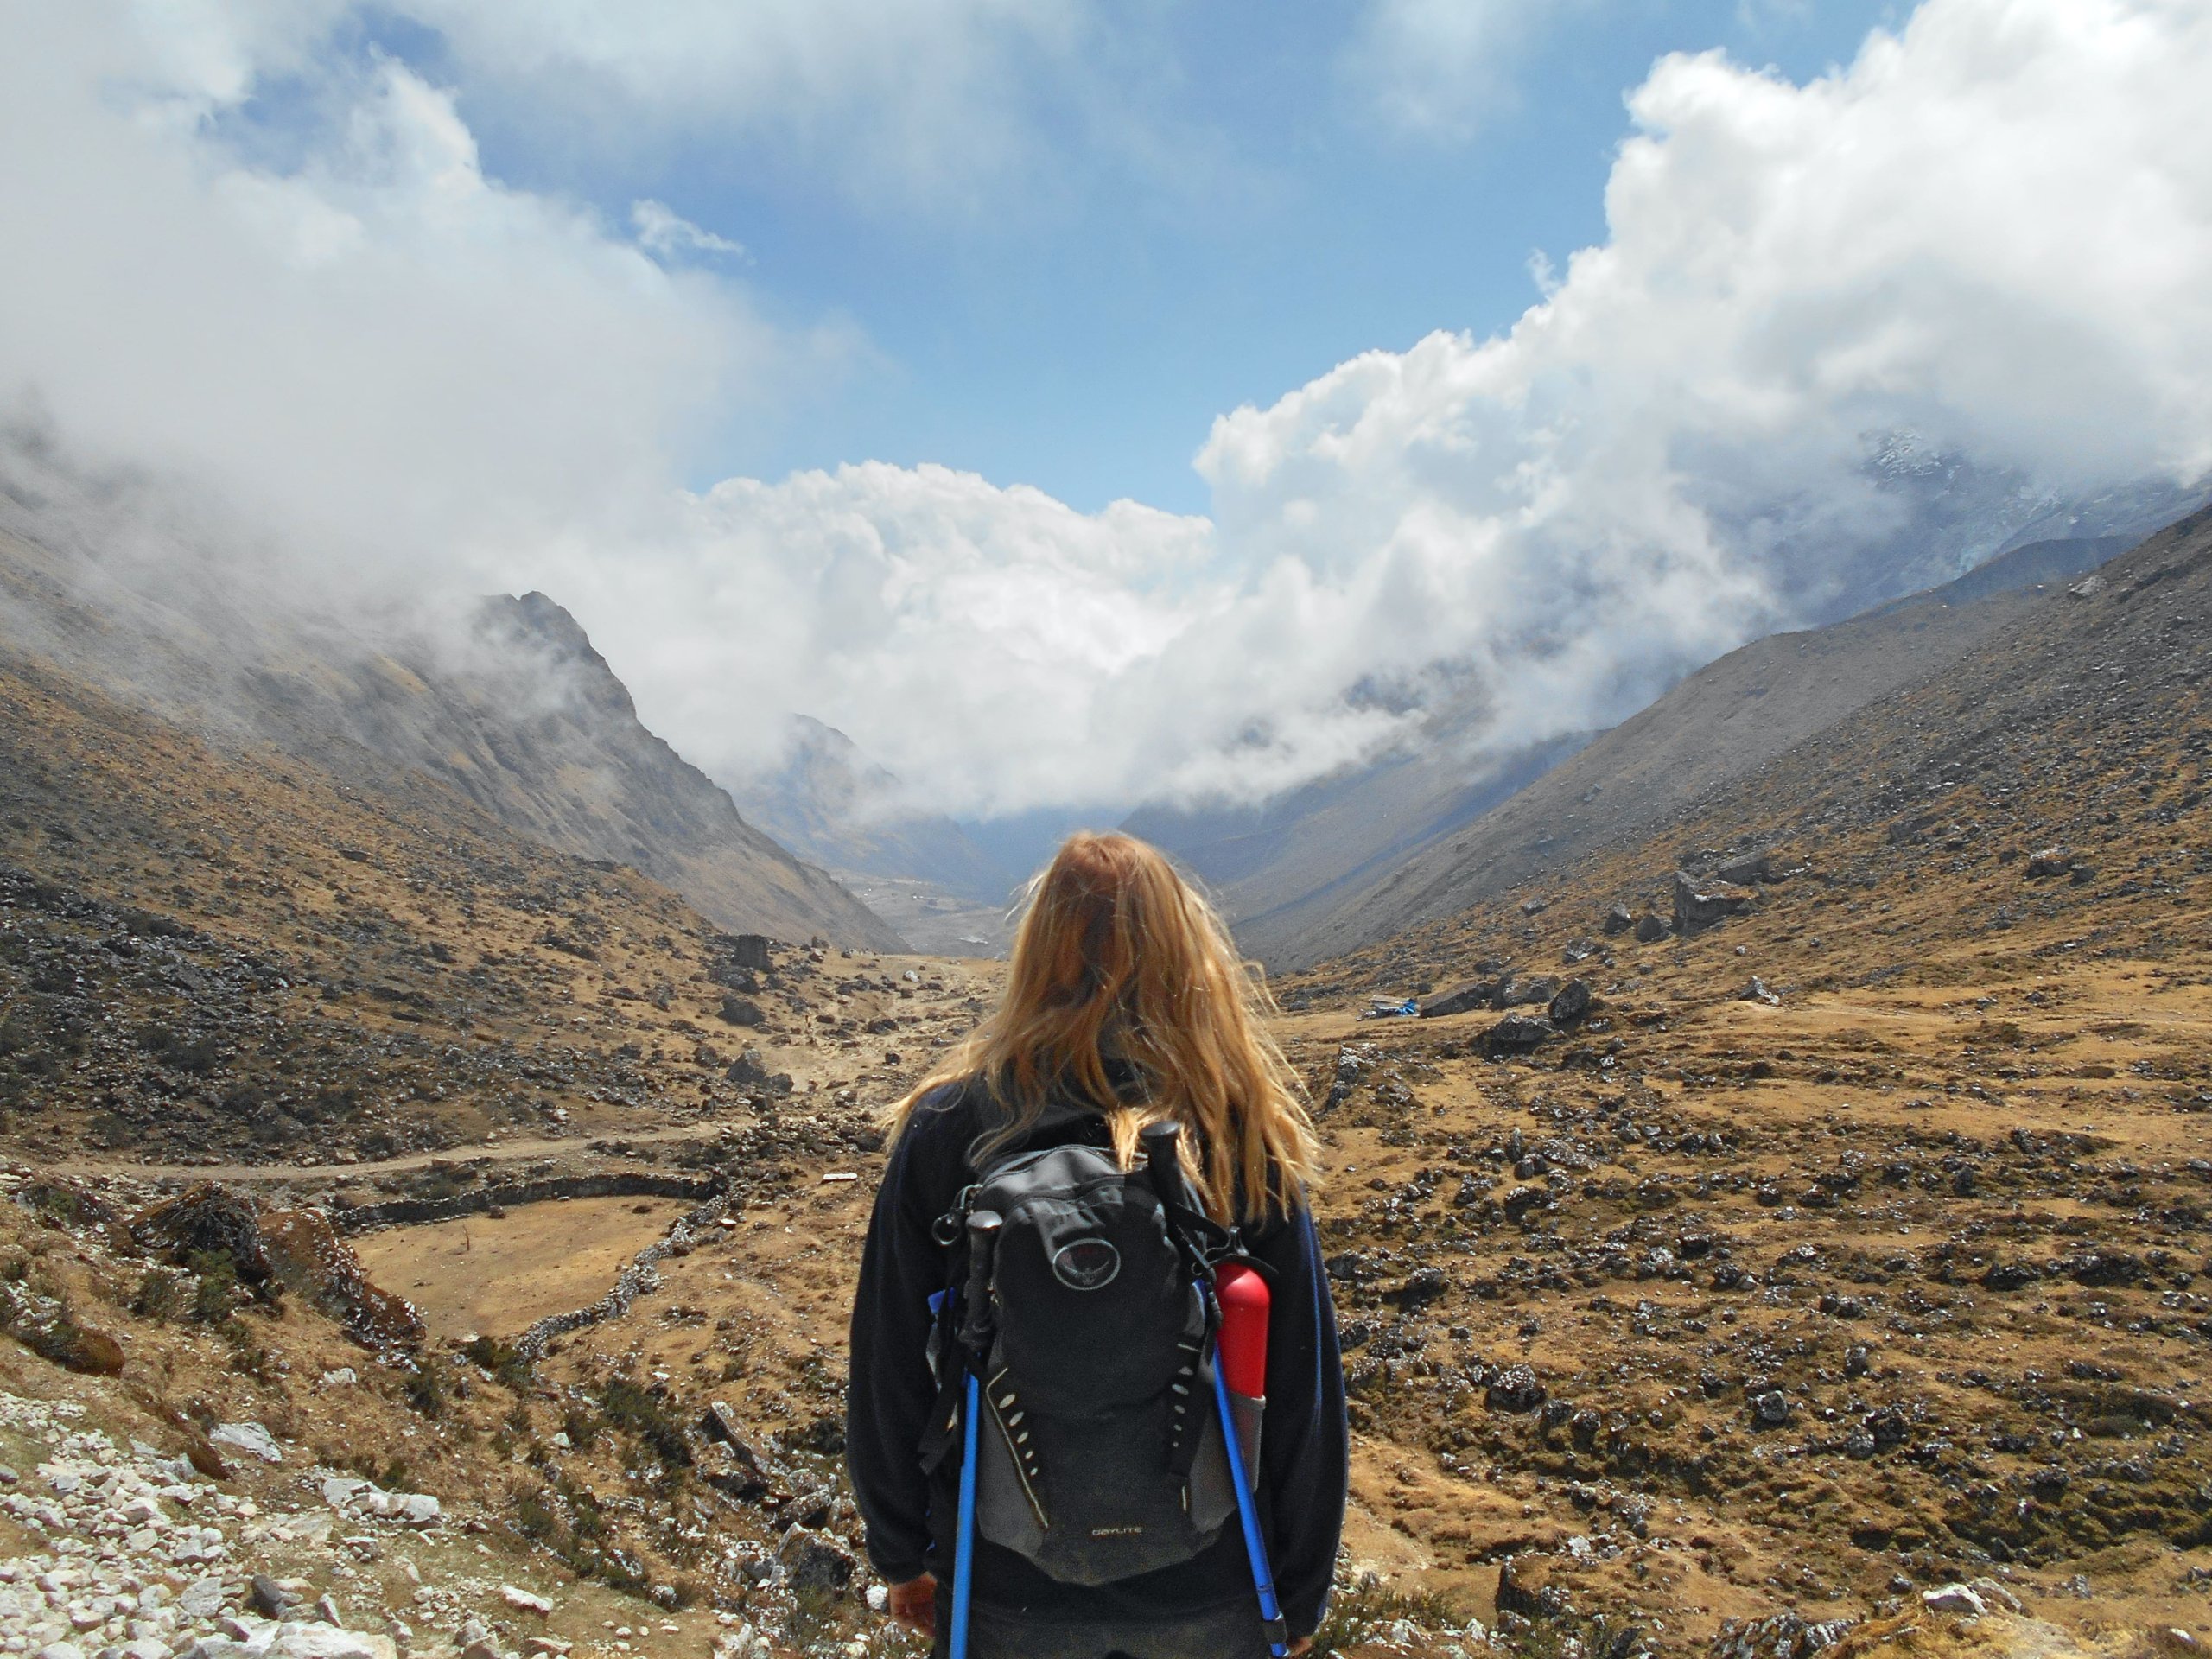 20 Unique Places to Visit in Peru